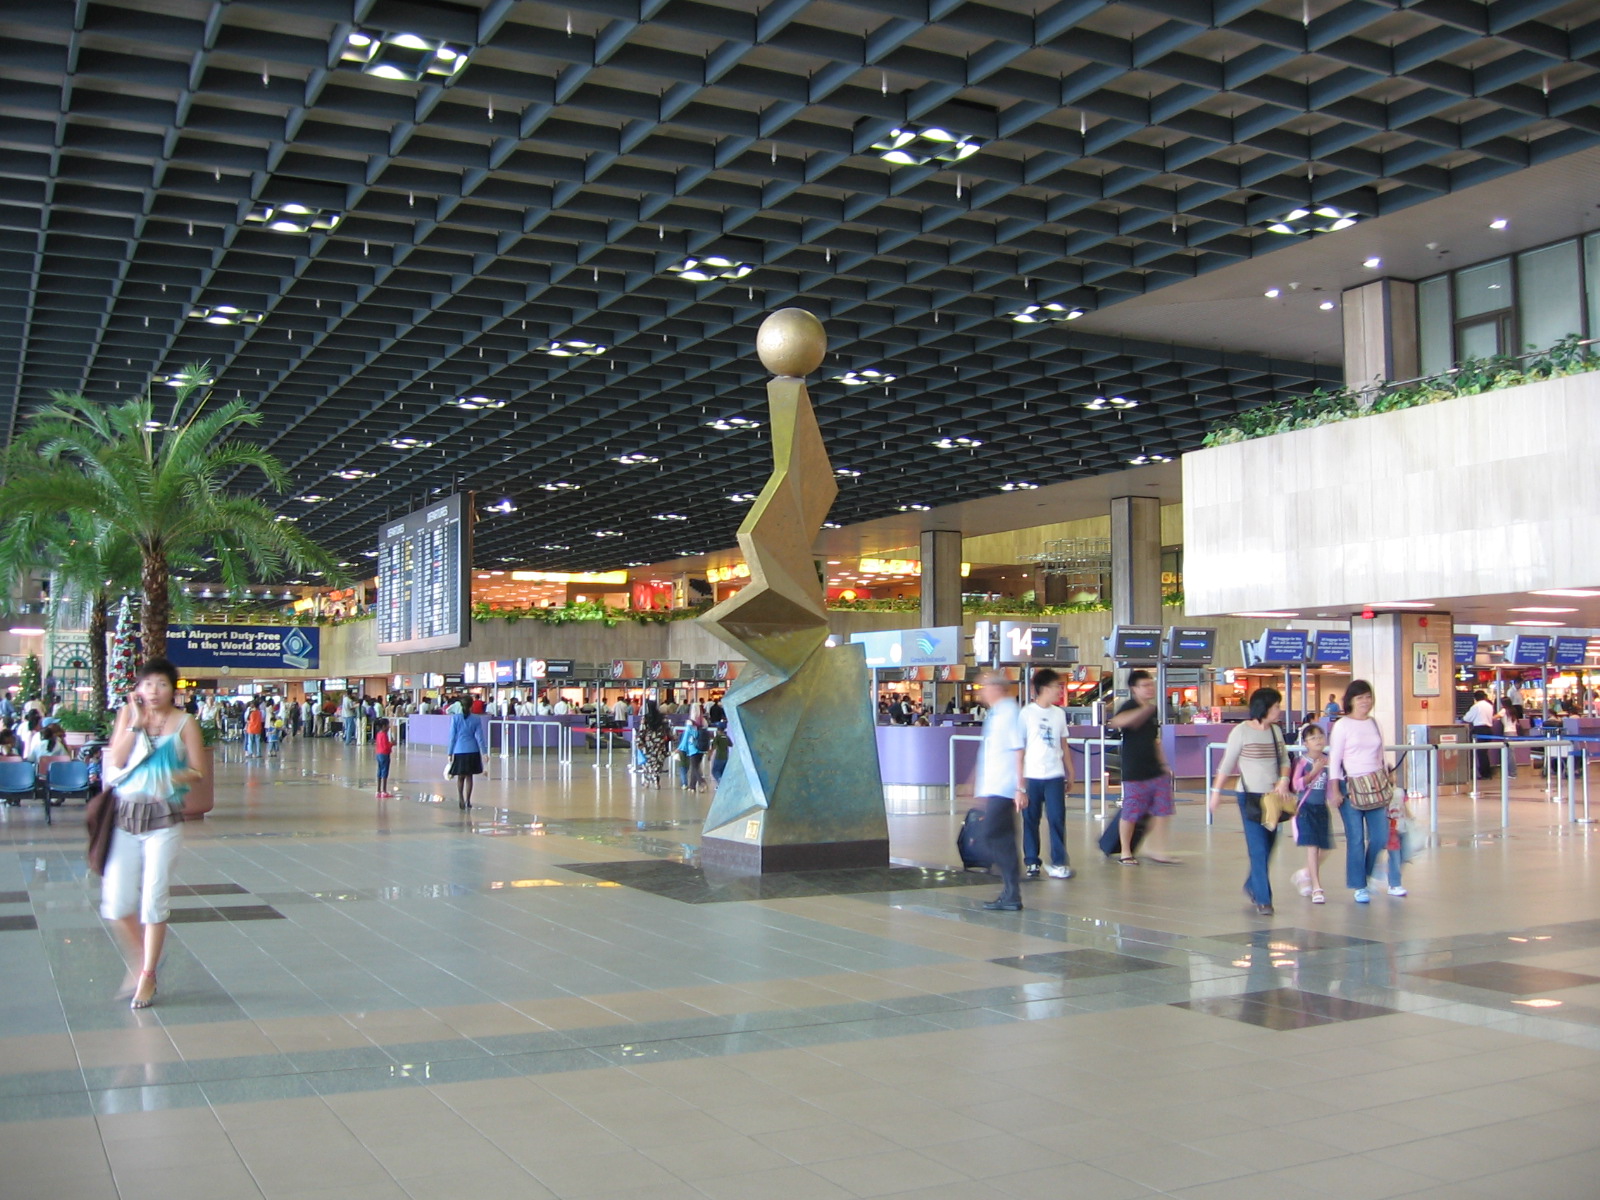 Cảng hàng không quốc tế Tân Sơn Nhất